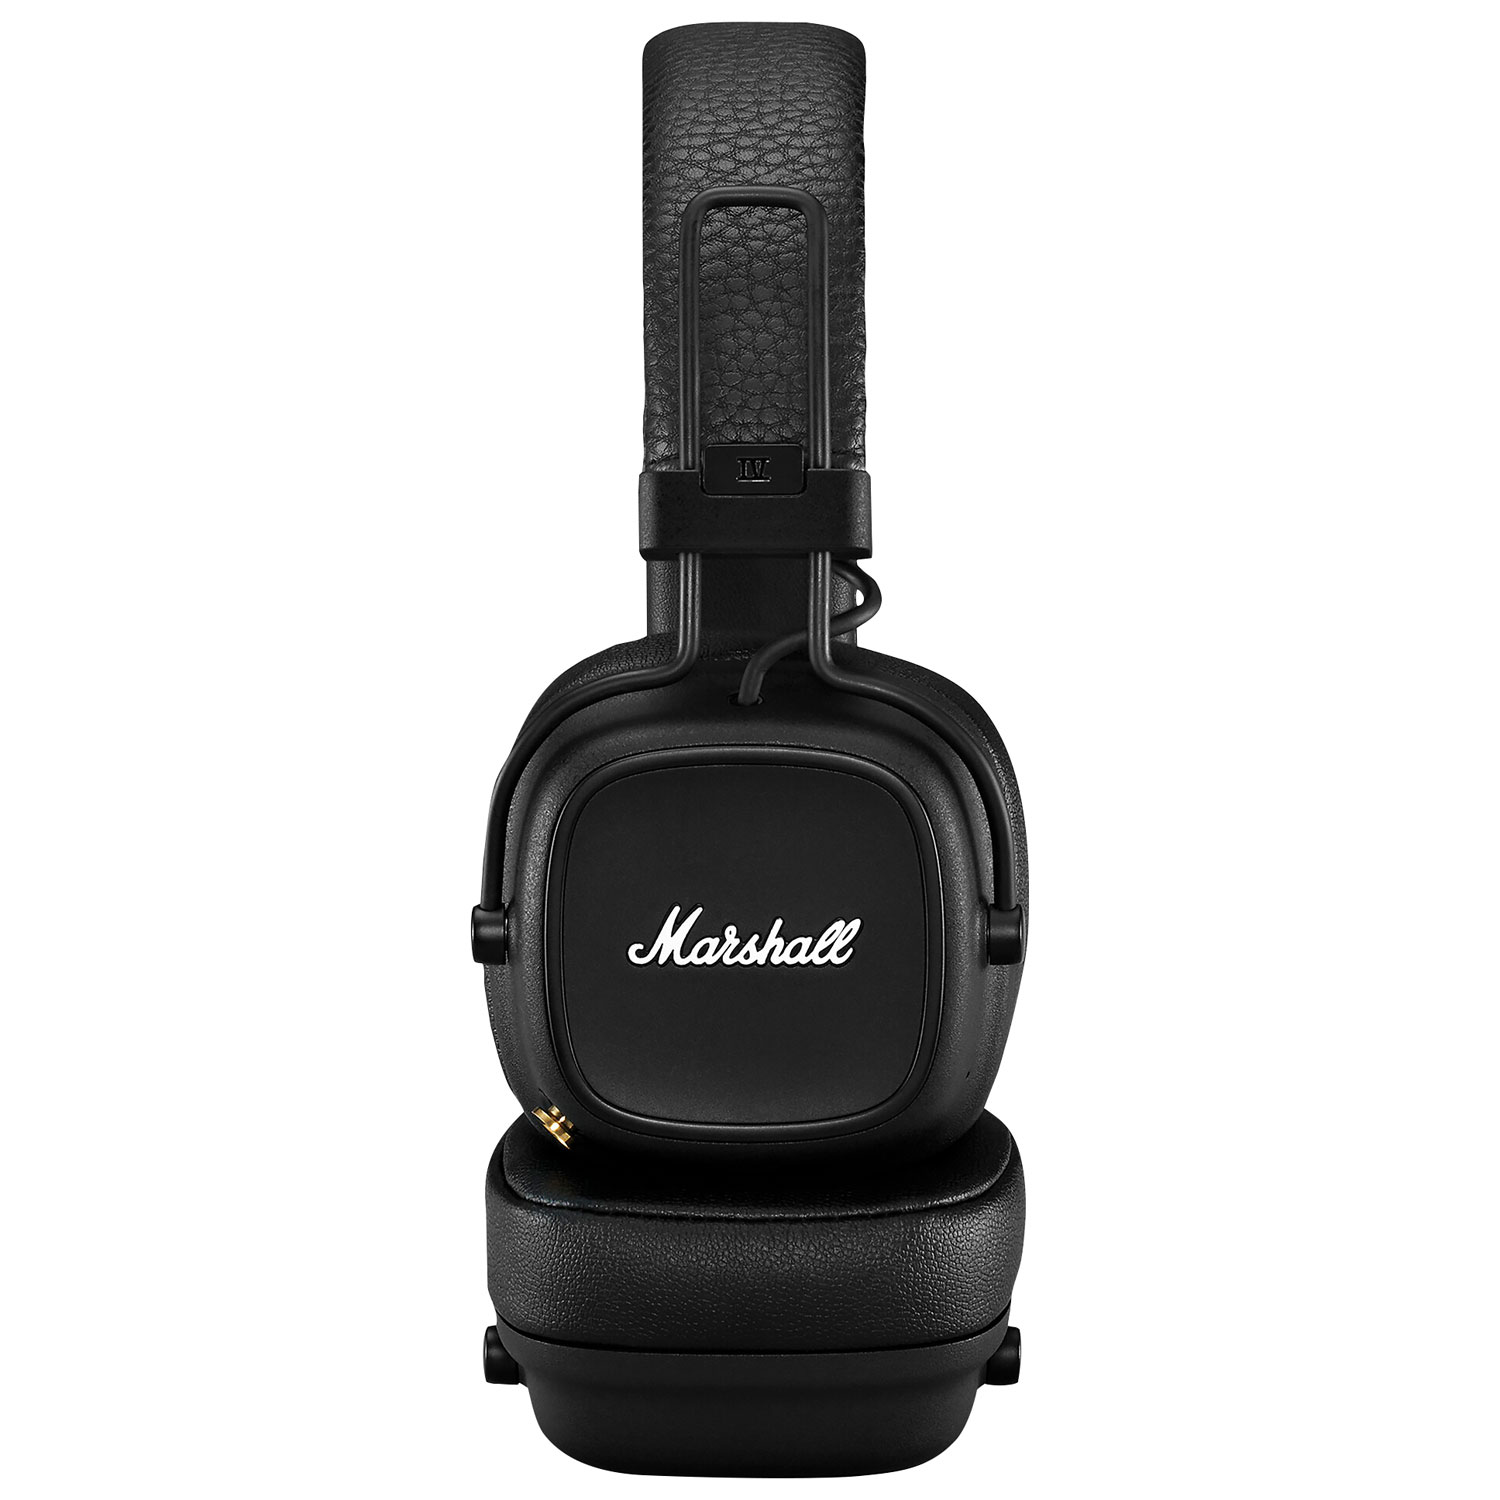 Marshall Major IV On-Ear Bluetooth Headphones - Black | Best Buy